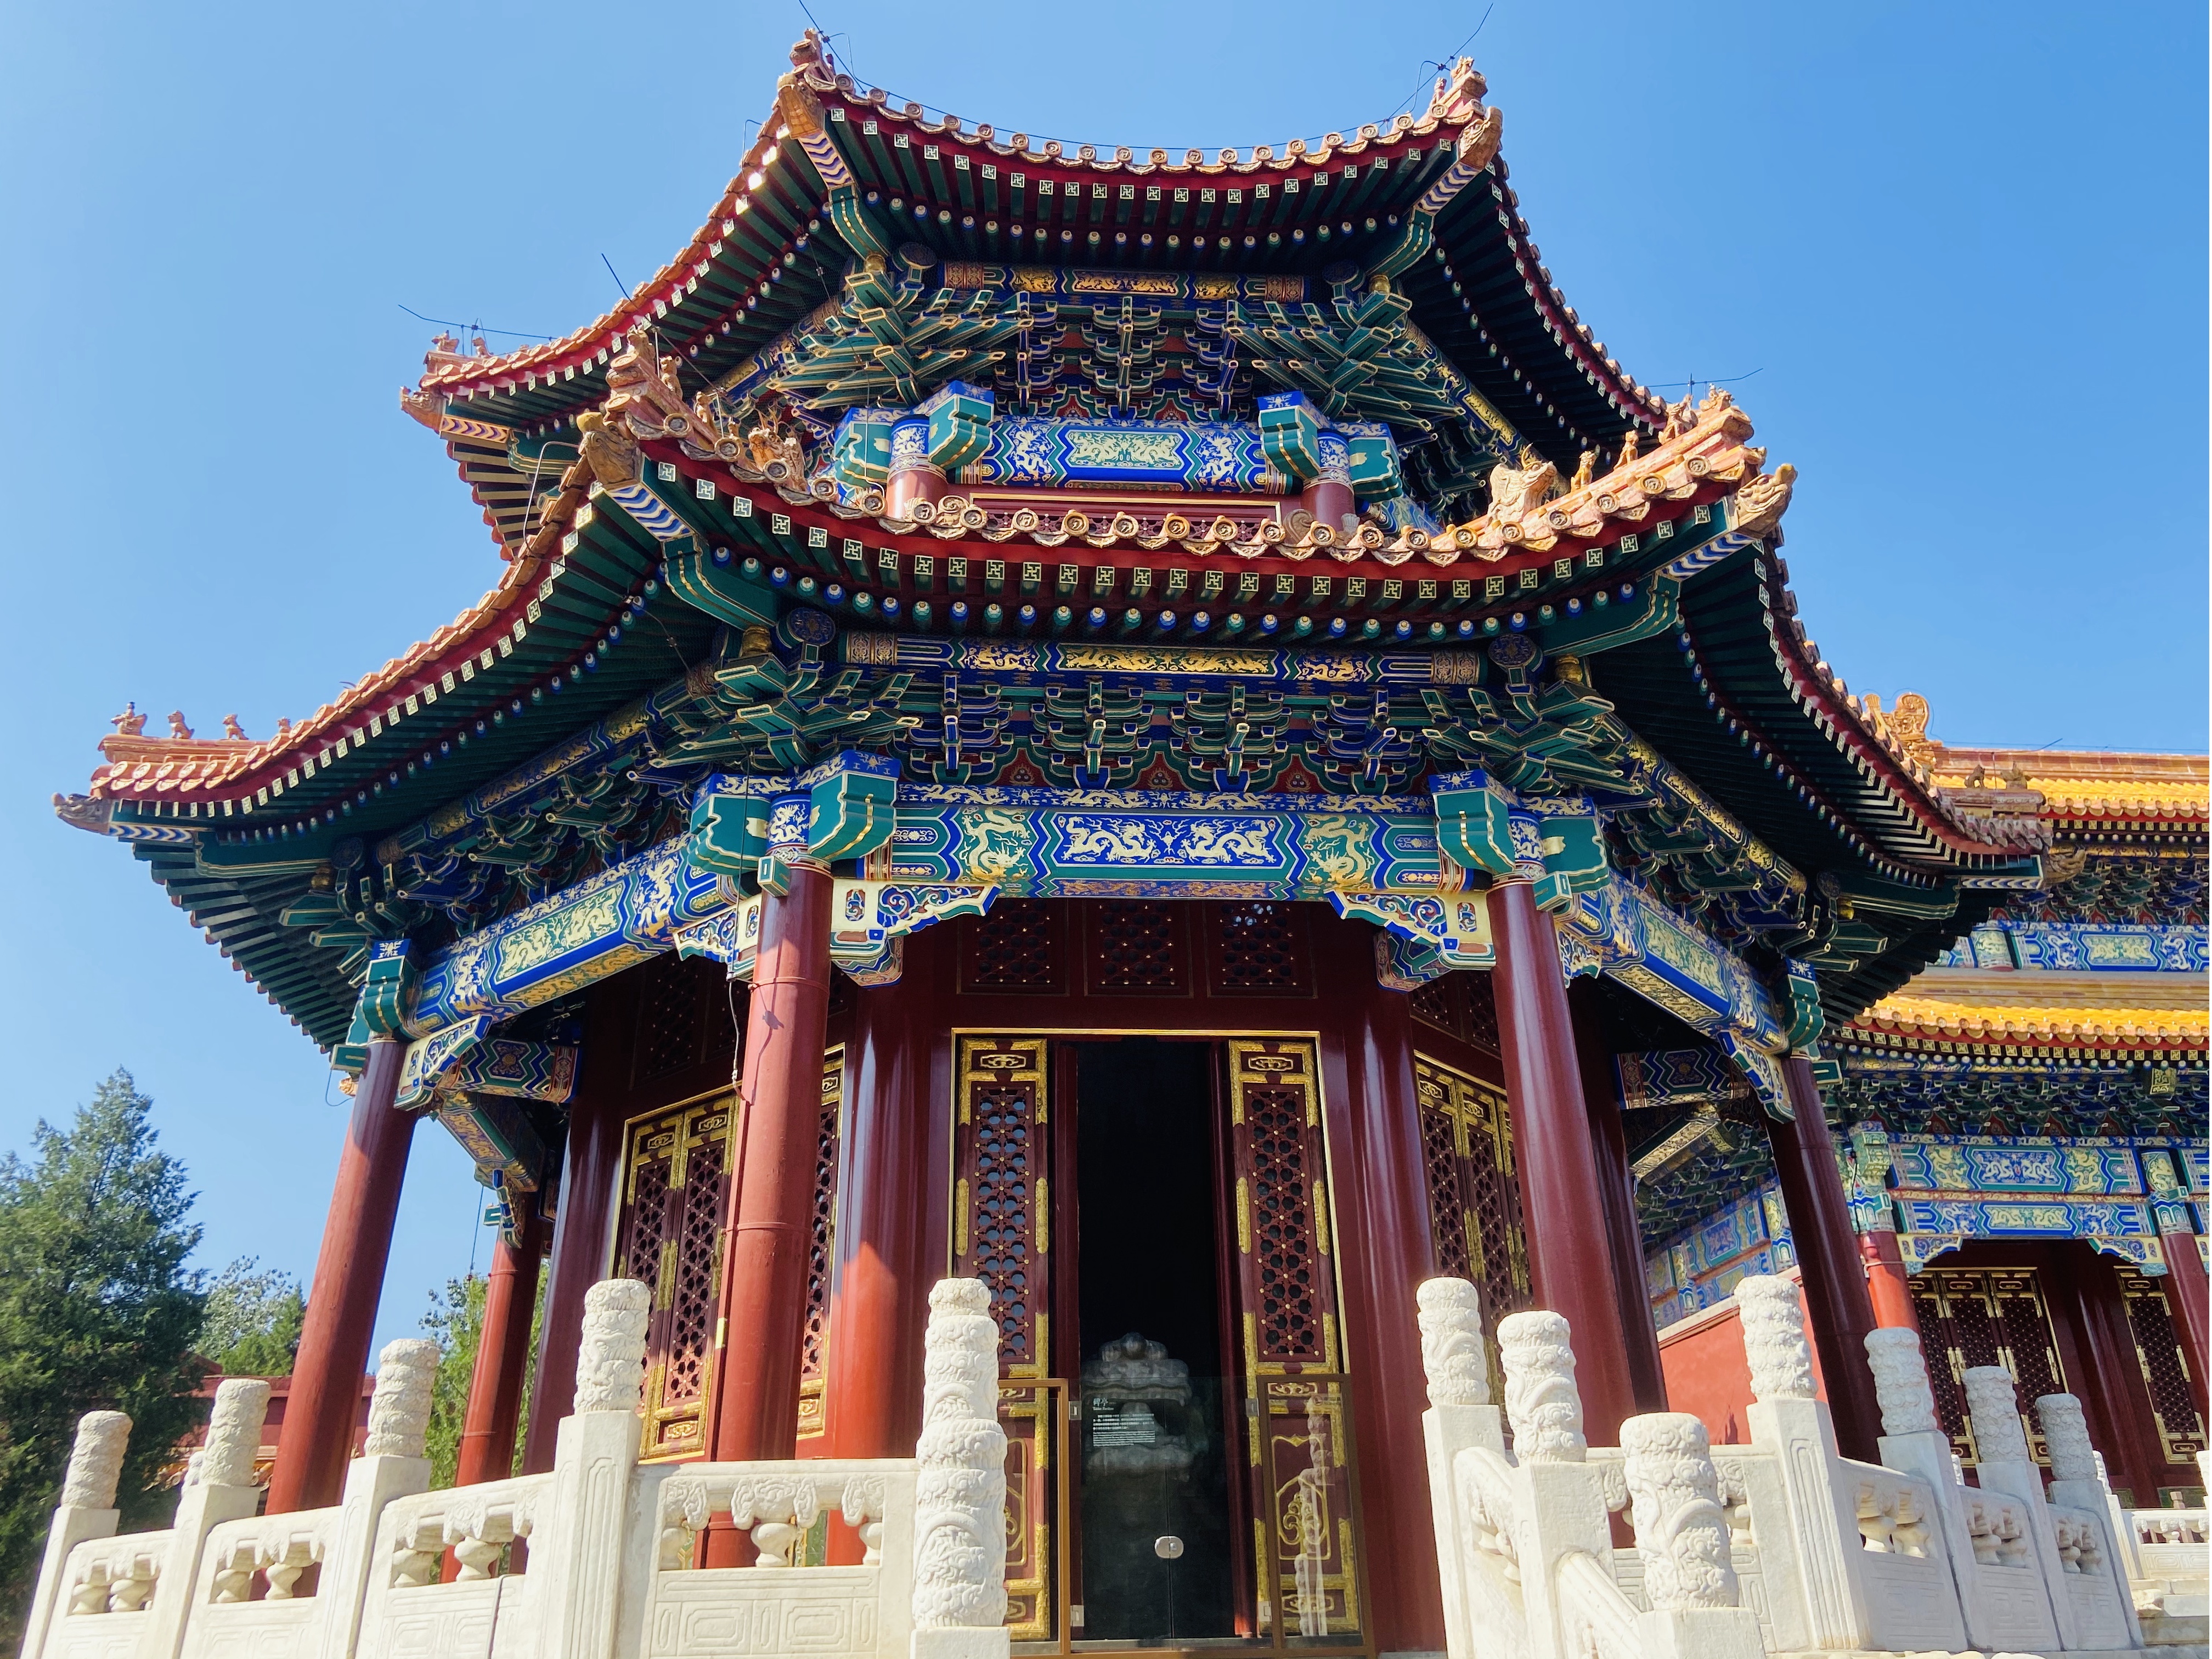 景山公園 紫禁城の屋根の絶景はここだけ 北京観光の公式サイト 北京旅行網 北京市文化観光局が管理 運営する非営利的なウェブサイト